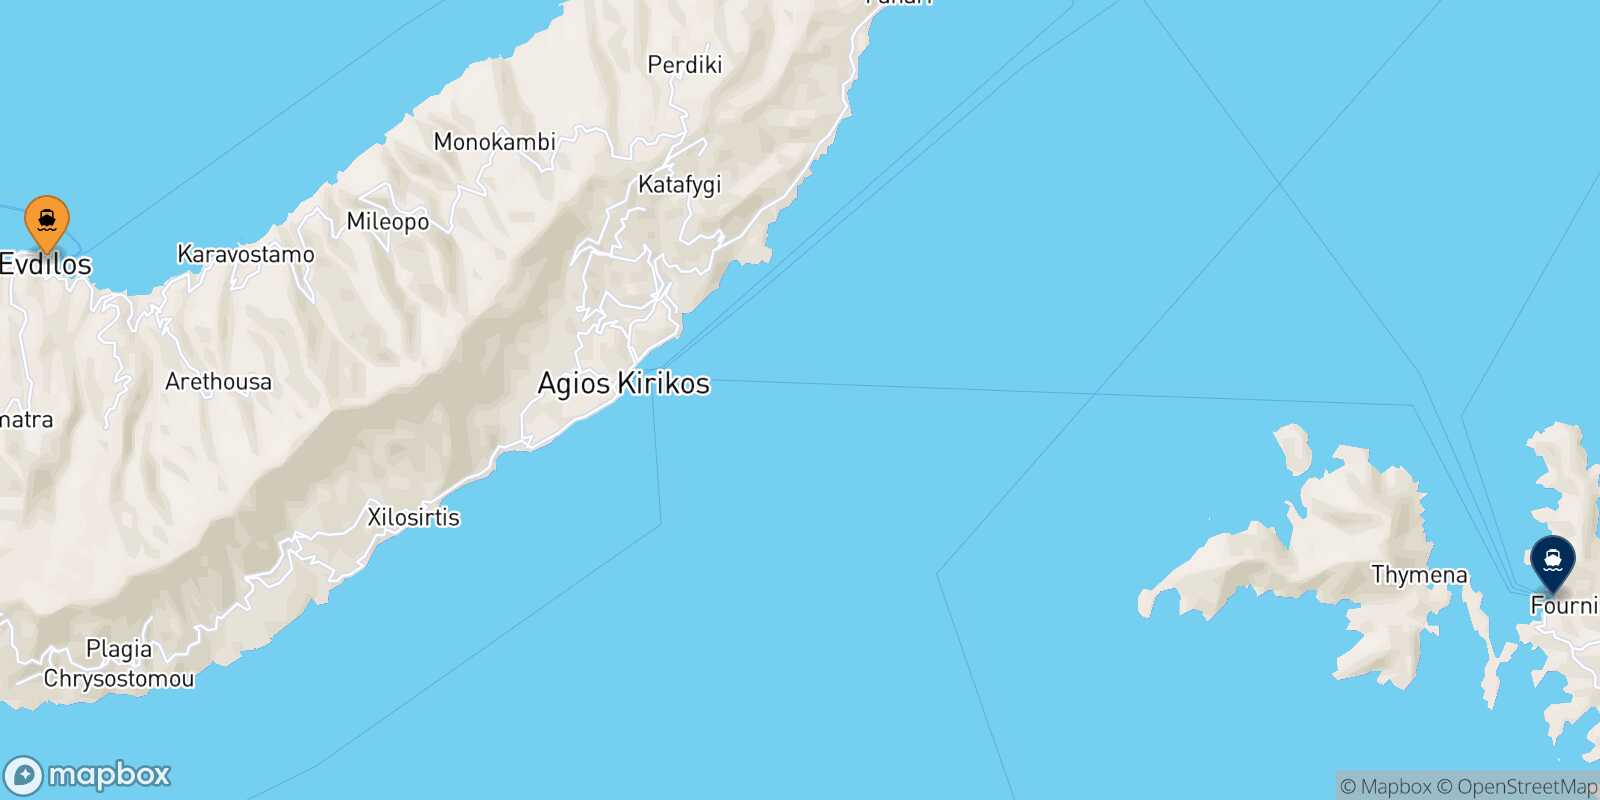 Evdilos (Ikaria) Fourni route map